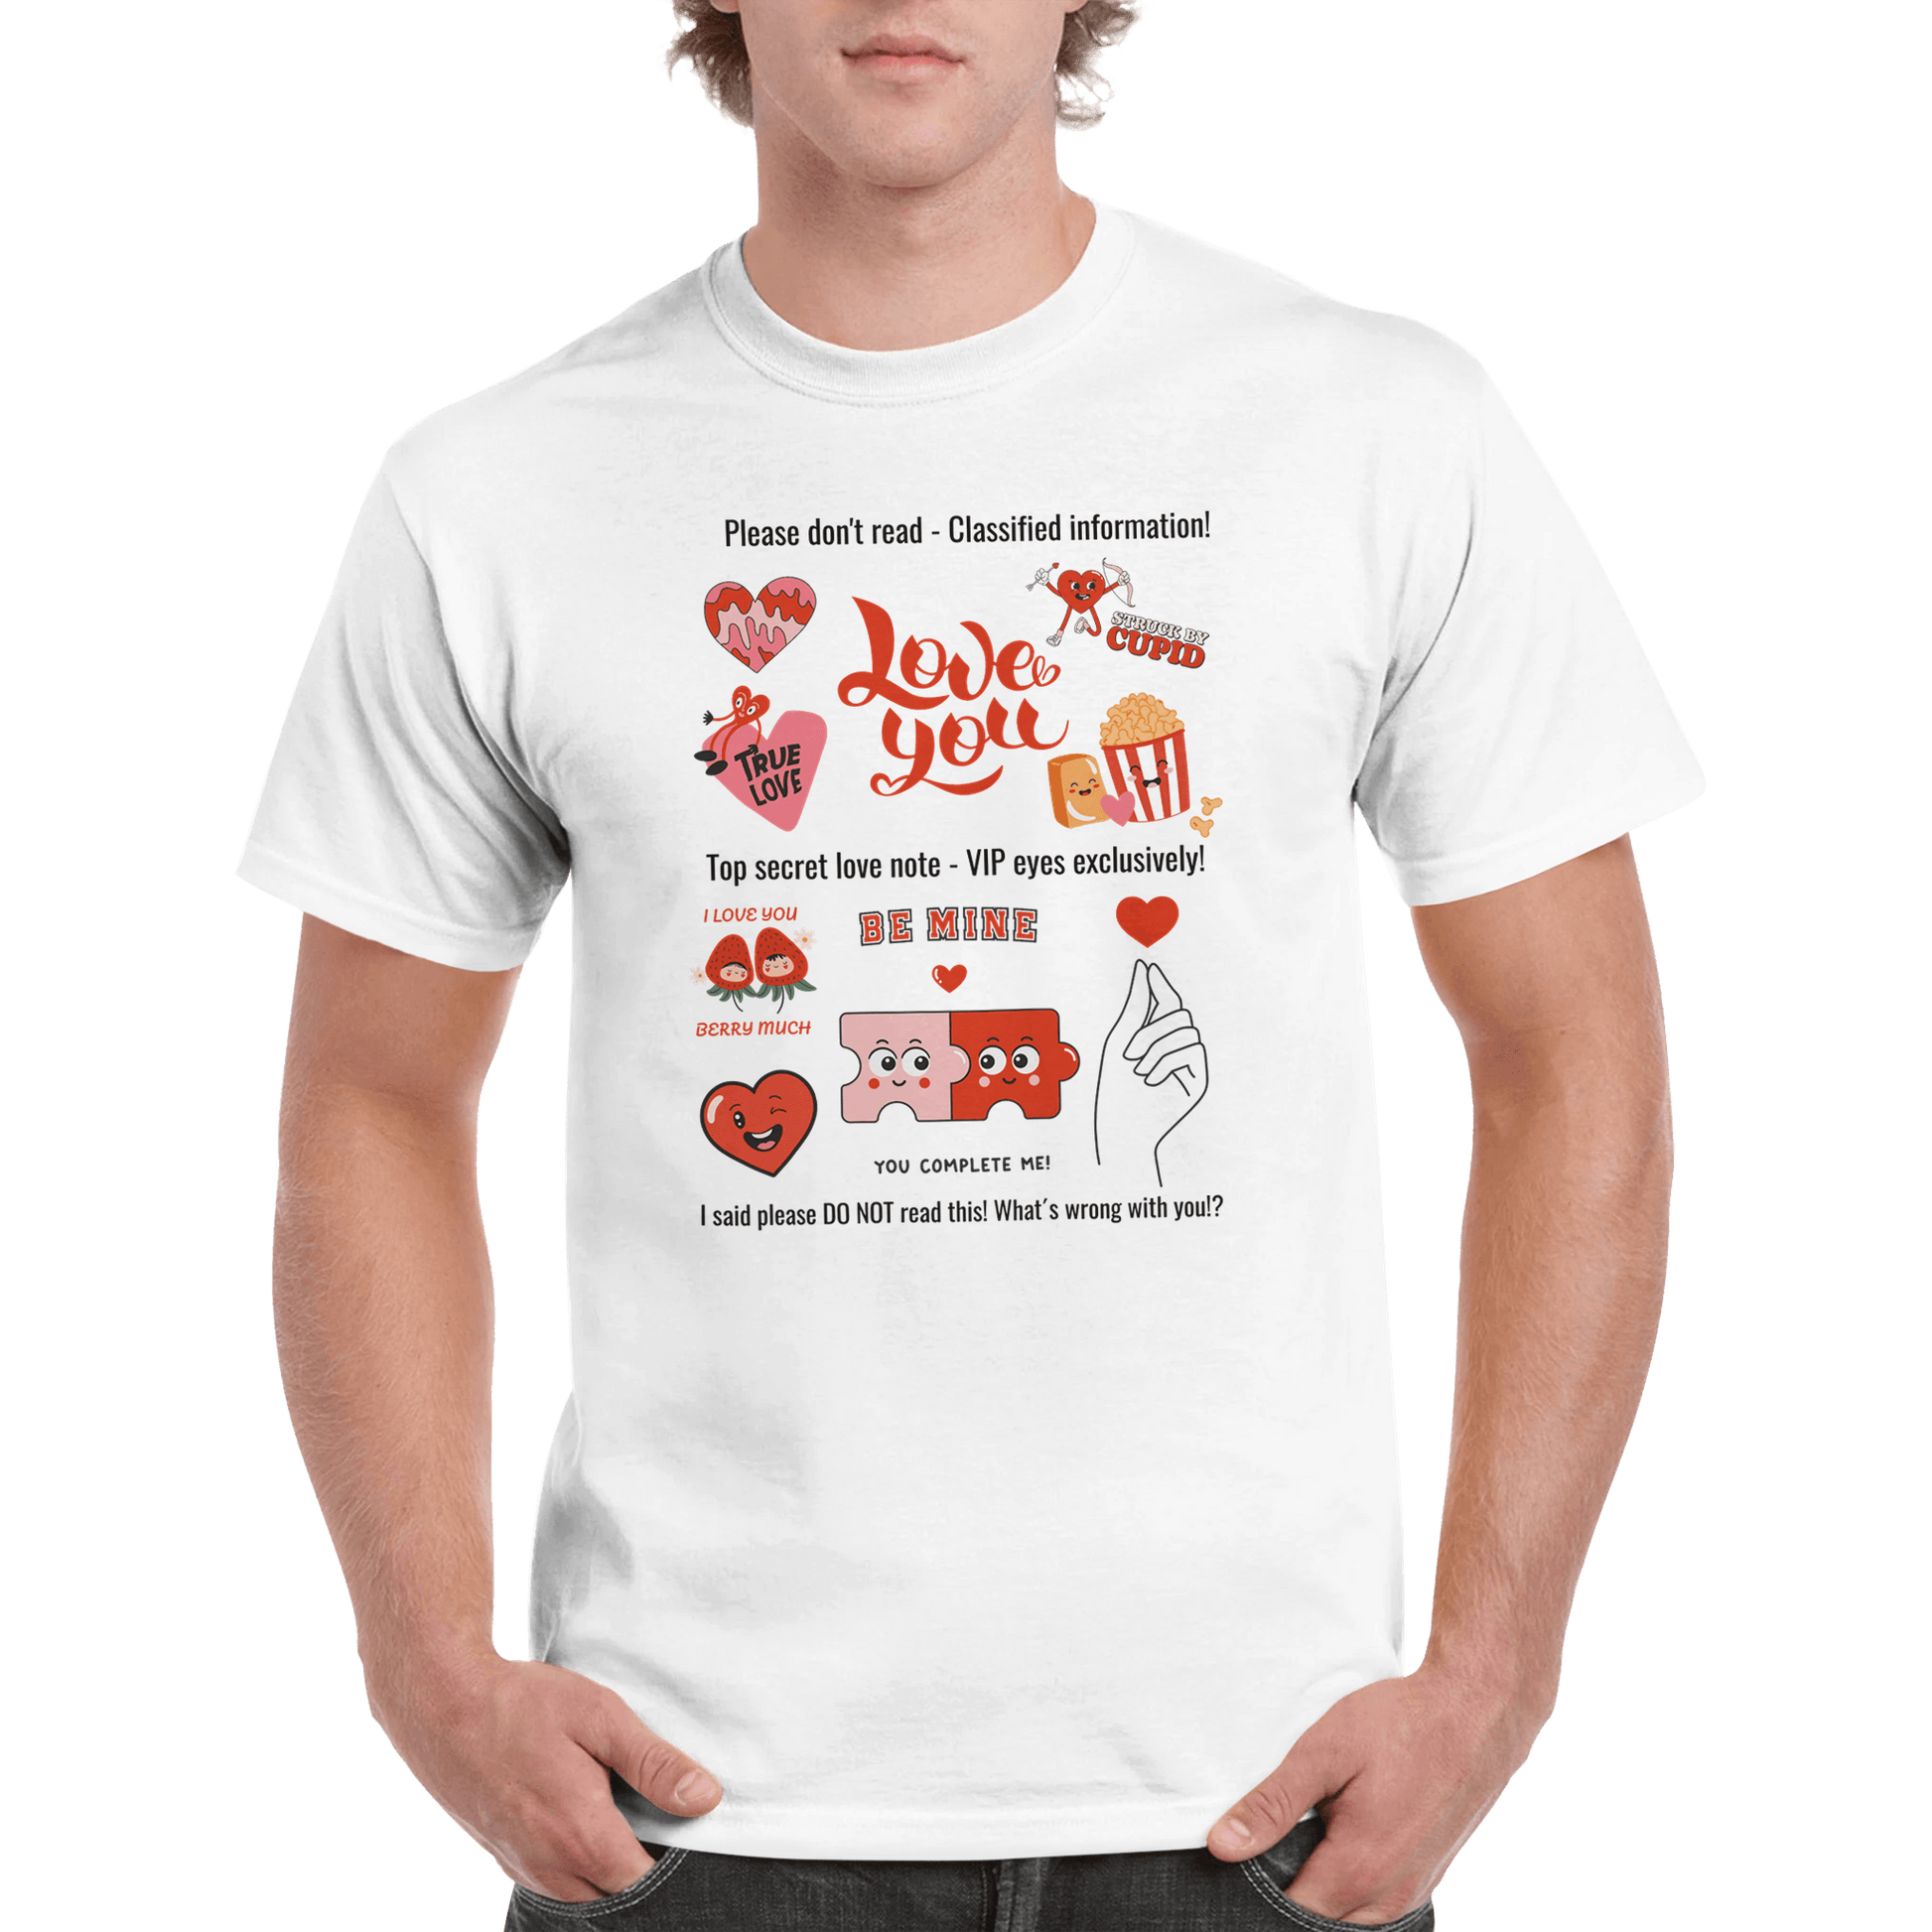 Valentines Love, personalisierbar: Schweres günstiges Unisex T-Shirt mit Rundhalsausschnitt - HalloGeschenk.de #geschenkideen# #personalisiert# #geschenk#